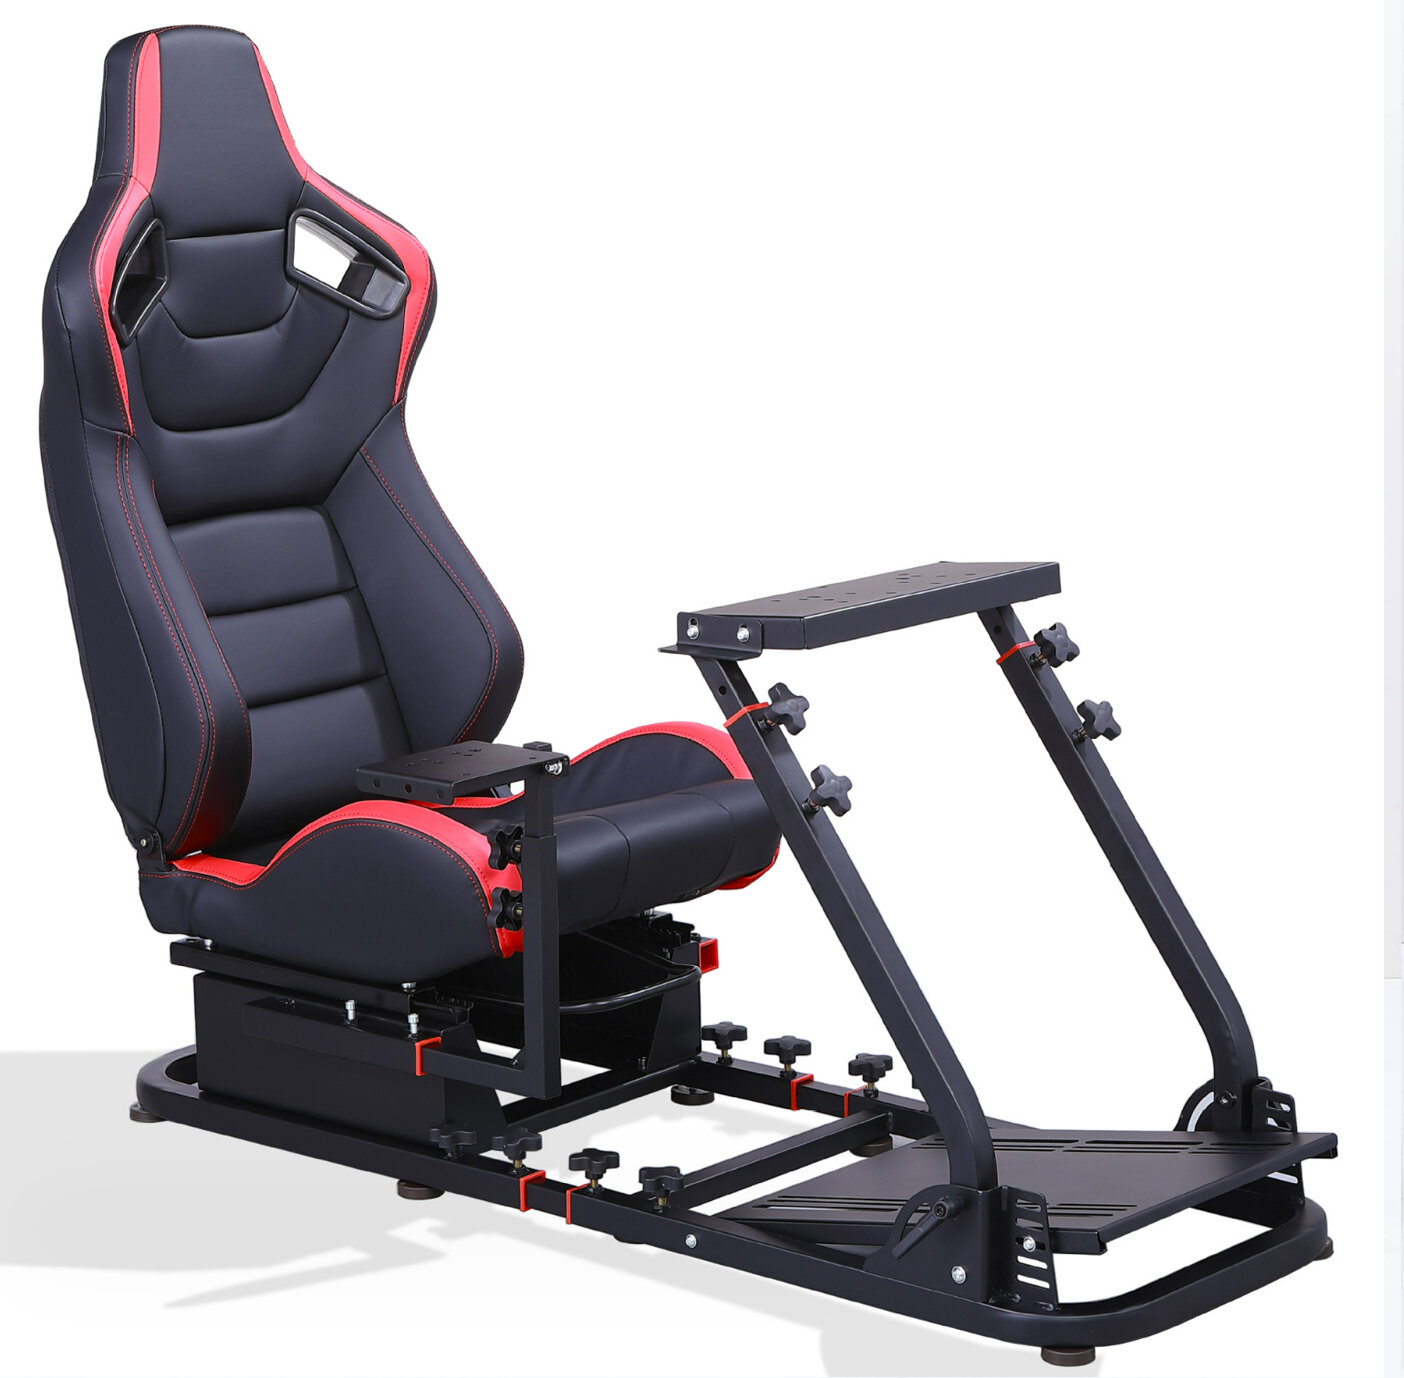 Игровое кресло автосимулятор MOOBY VRS подставка для игровых рулей, кокпит черный с красной вставкой